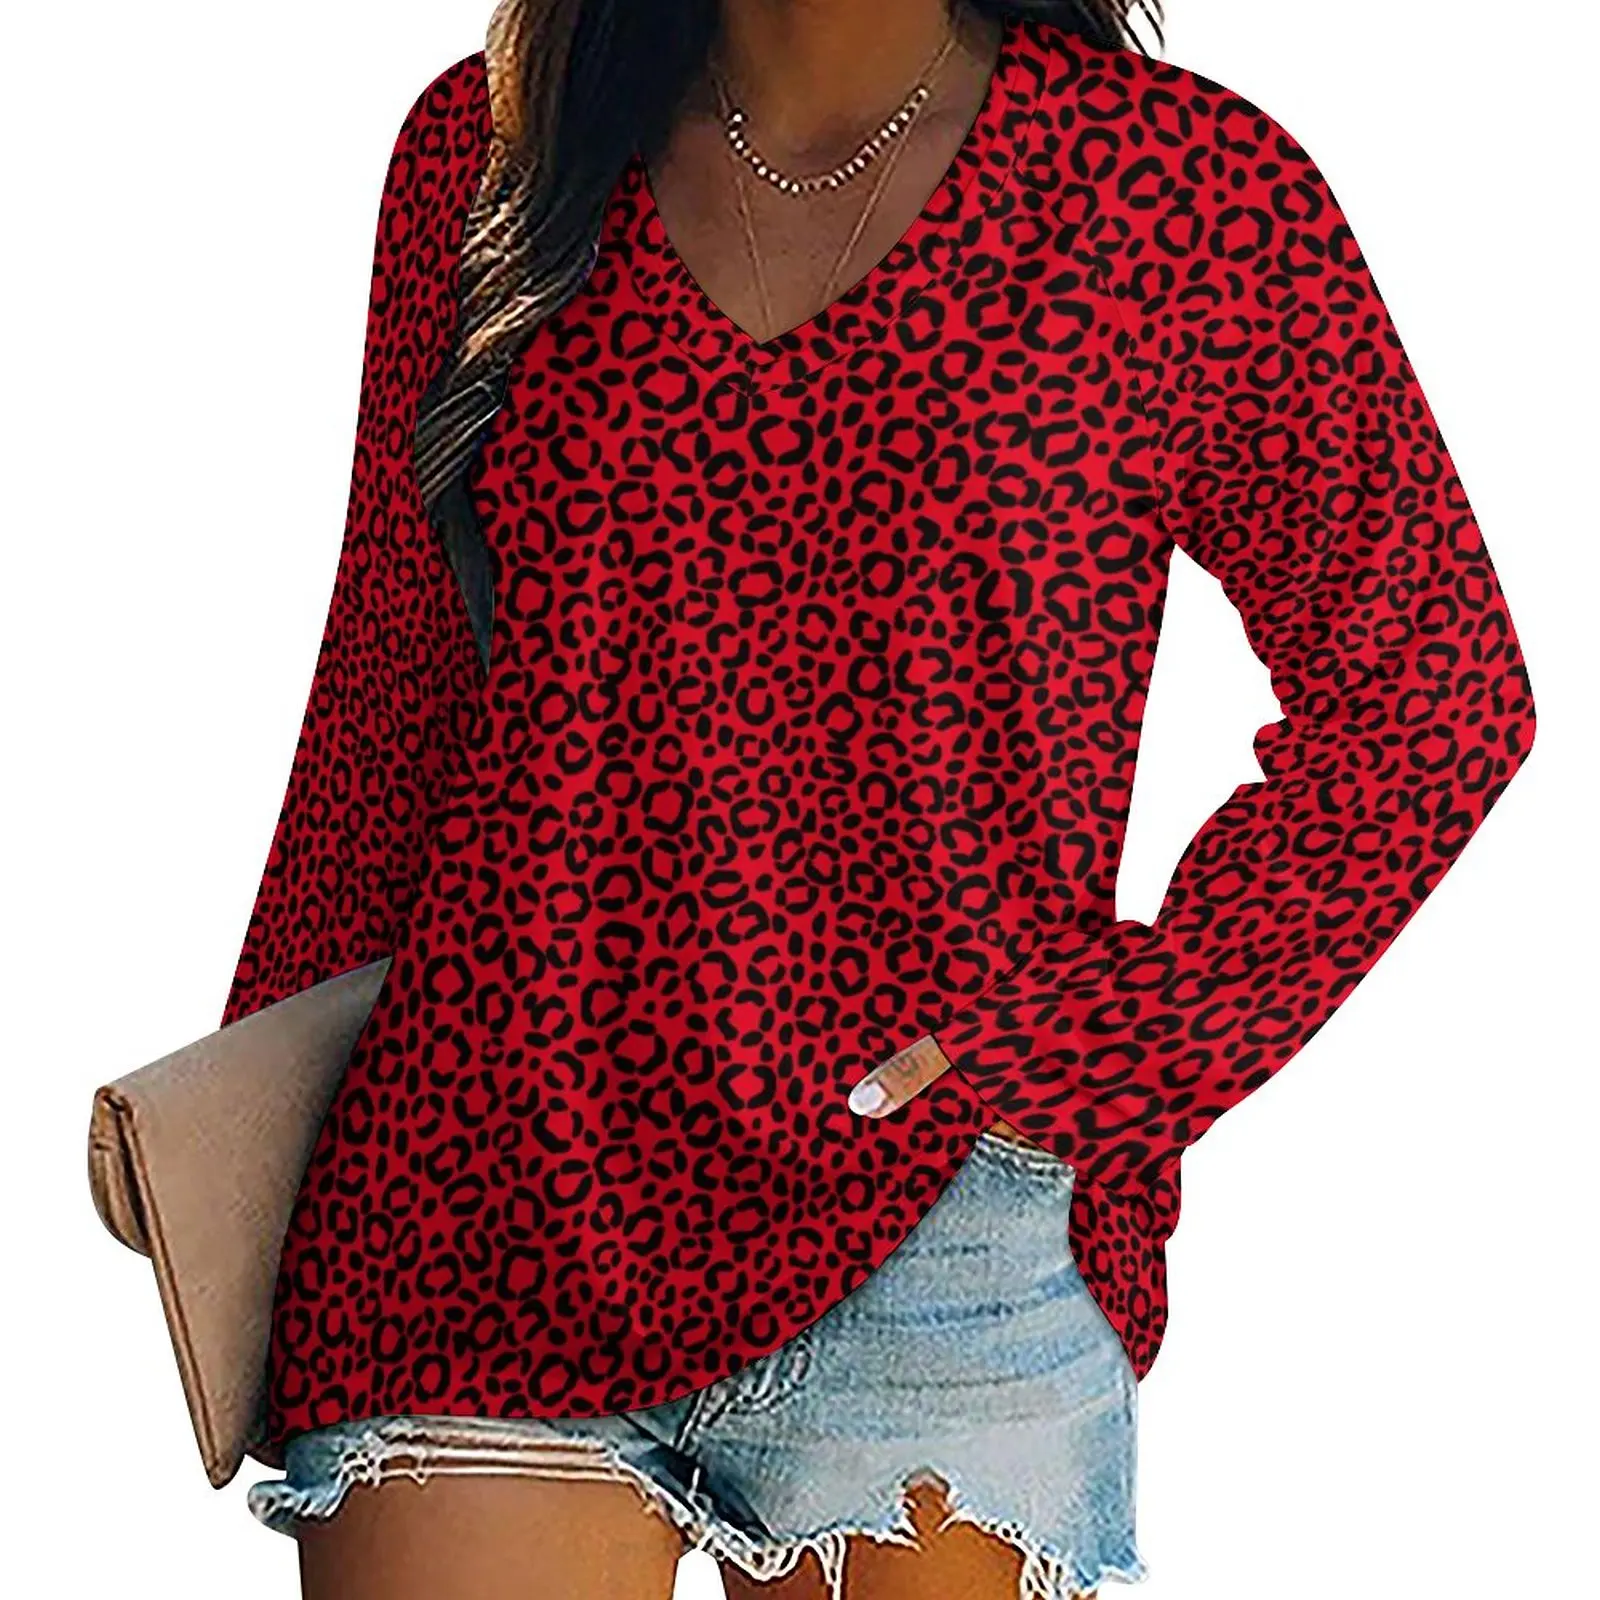 

Красно-черная футболка с леопардовым принтом, зимняя корейская модная футболка с животным мехом, красивая футболка с длинным рукавом, женская одежда с рисунком